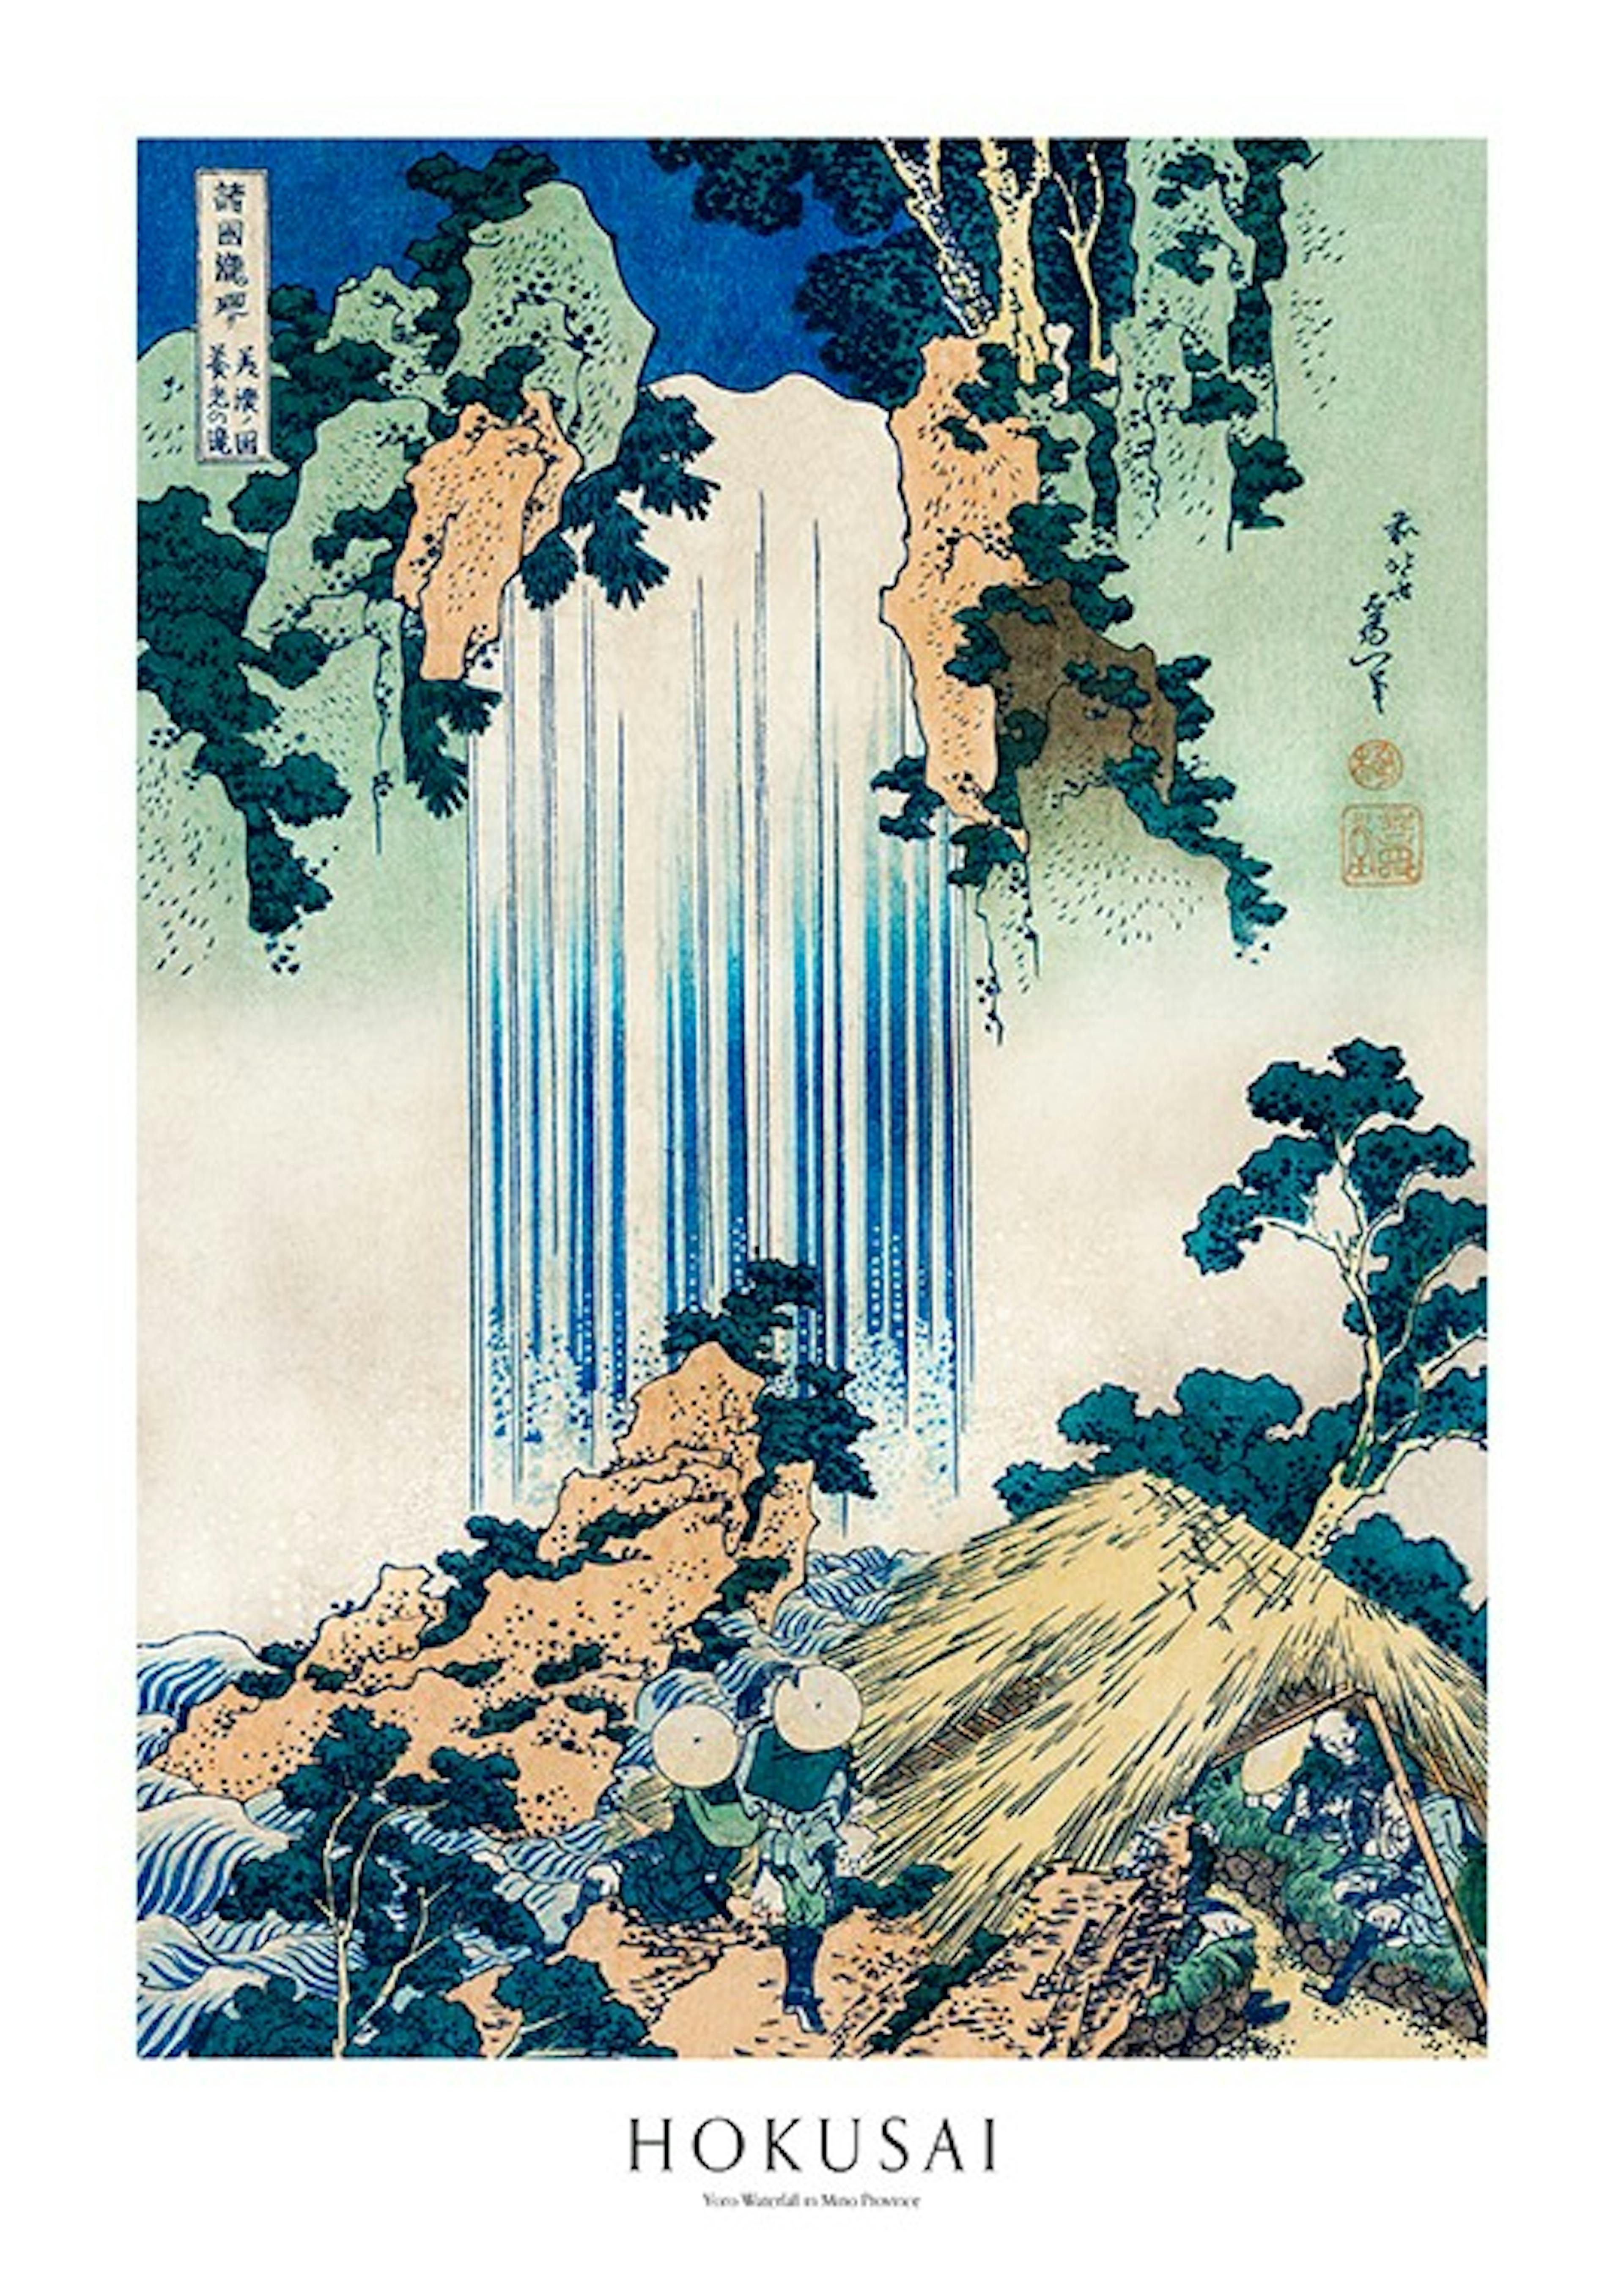 Hokusai - Yoro Waterfall in Mino Province 포스터 0